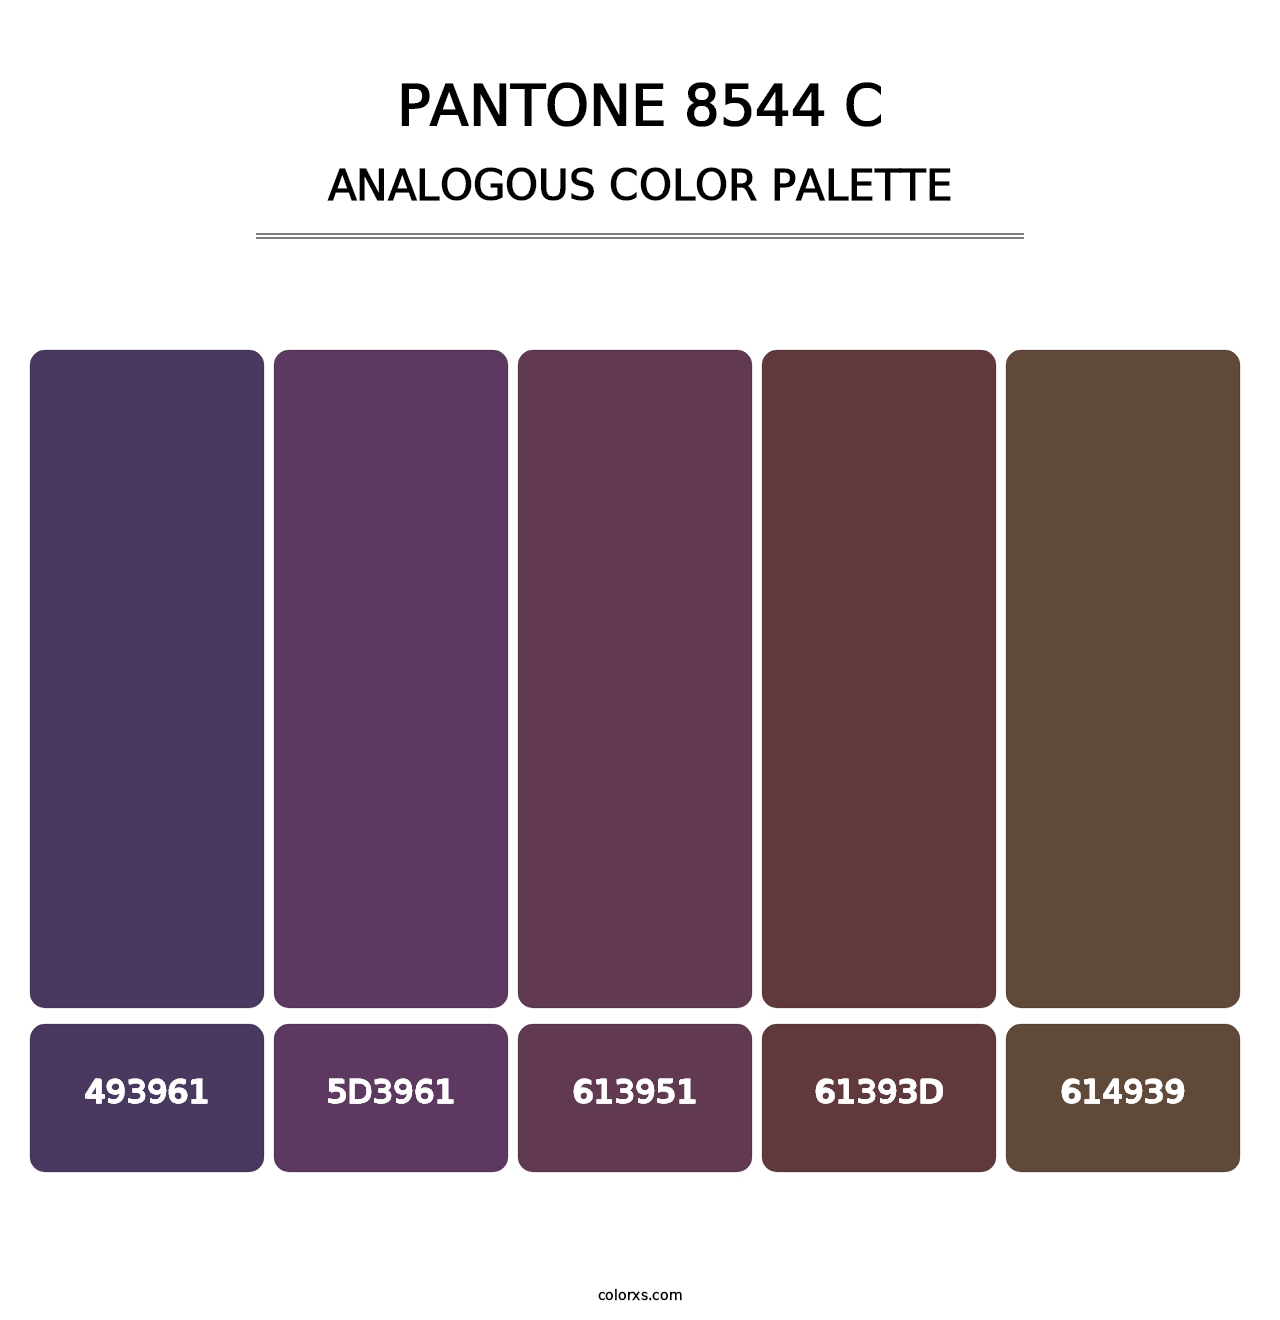 PANTONE 8544 C - Analogous Color Palette